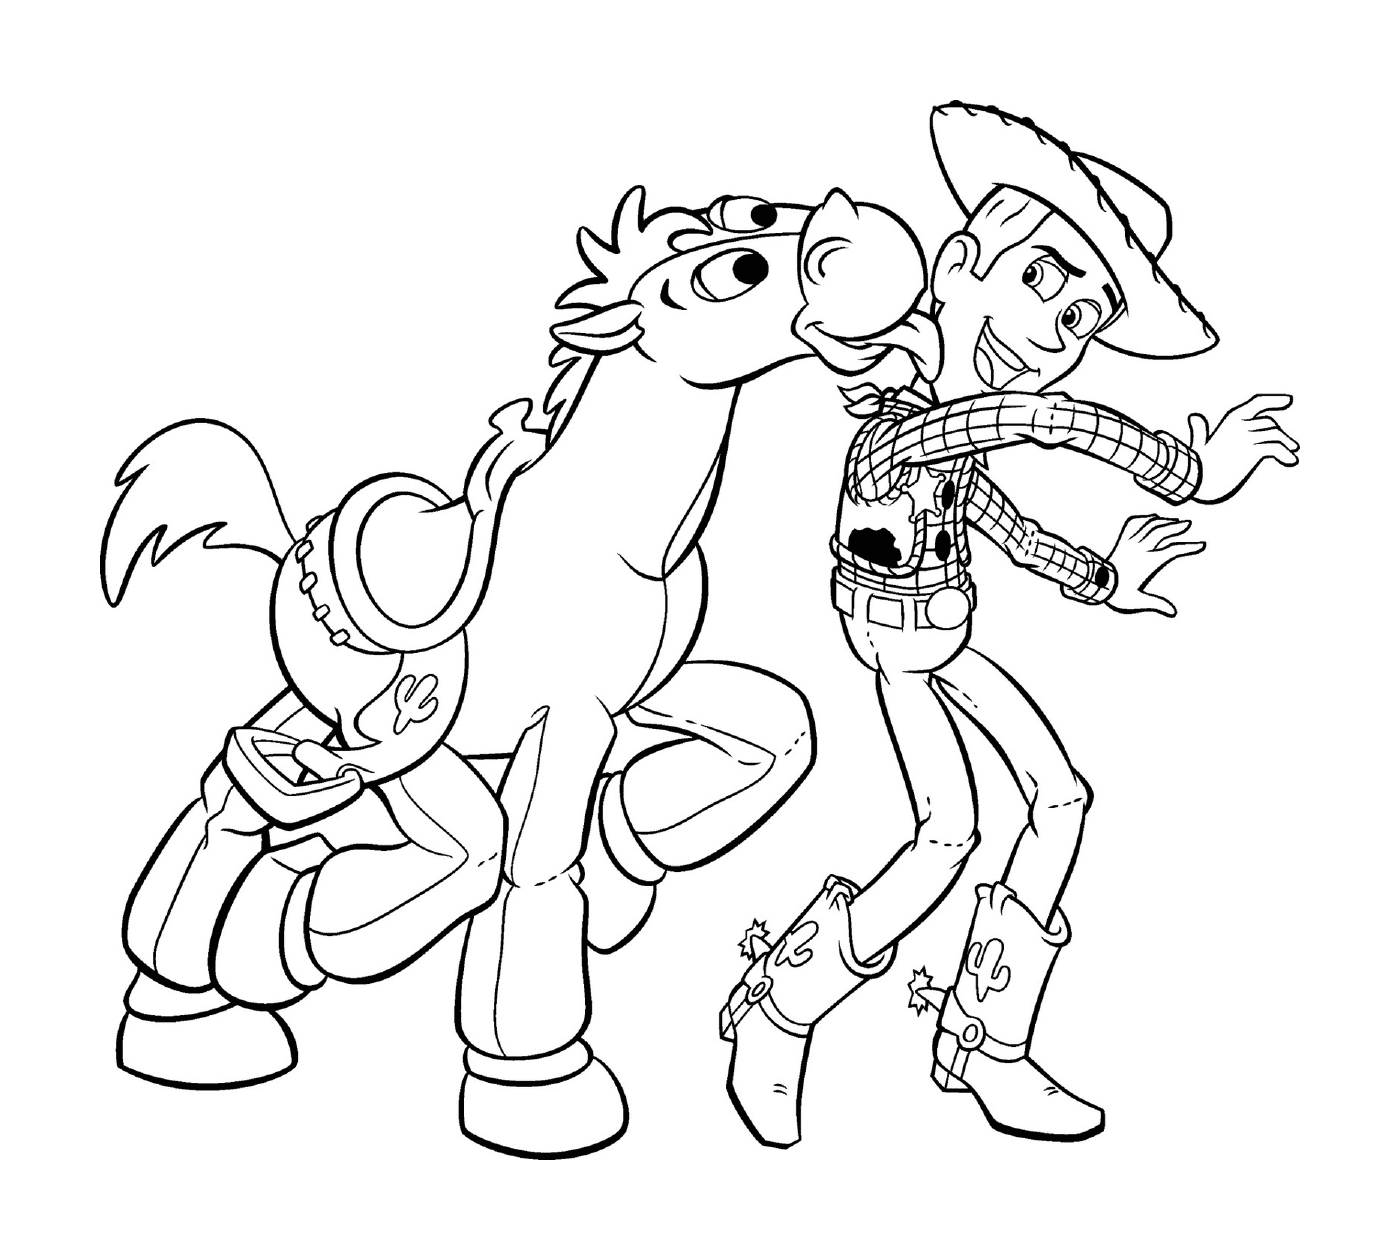  Woody and Bullseye have fun 